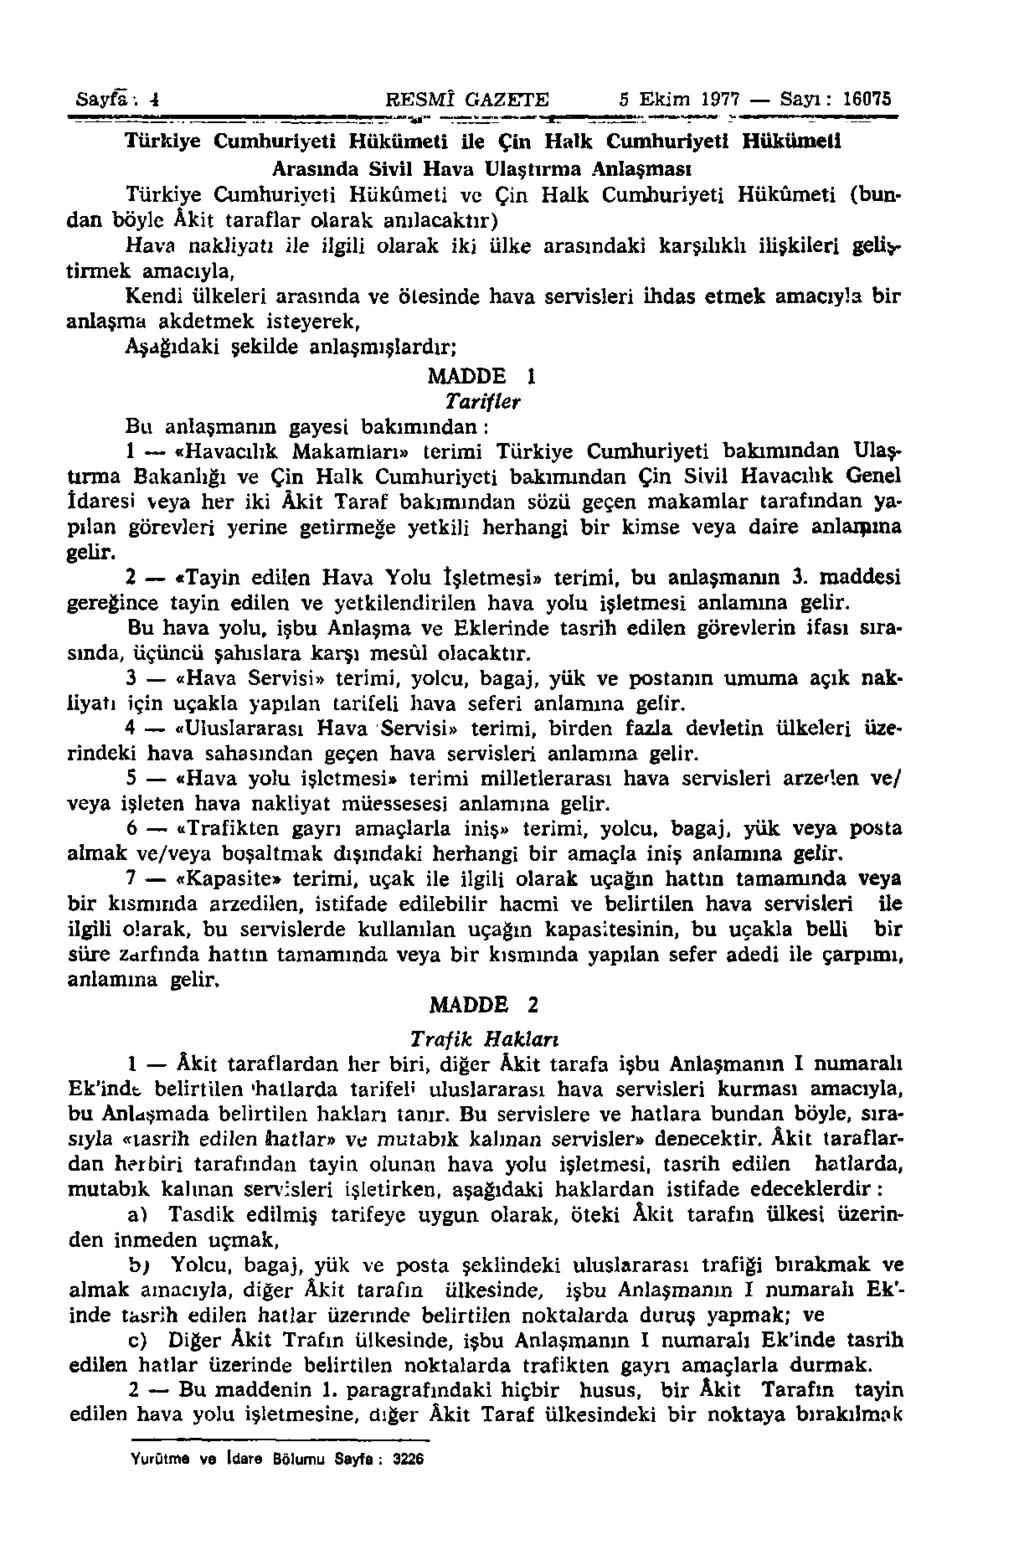 Sayfa: 4 4 RESMÎ GAZETE 5 S Ekim 1977 Sayı: 16075 Türkiye Cumhuriyeti Hükümeti ile Çin Halk Cumhuriyeti Hükümeti Arasında Sivil Hava Ulaştırma Anlaşması Türkiye Cumhuriyeti Hükümeti ve Çin Halk